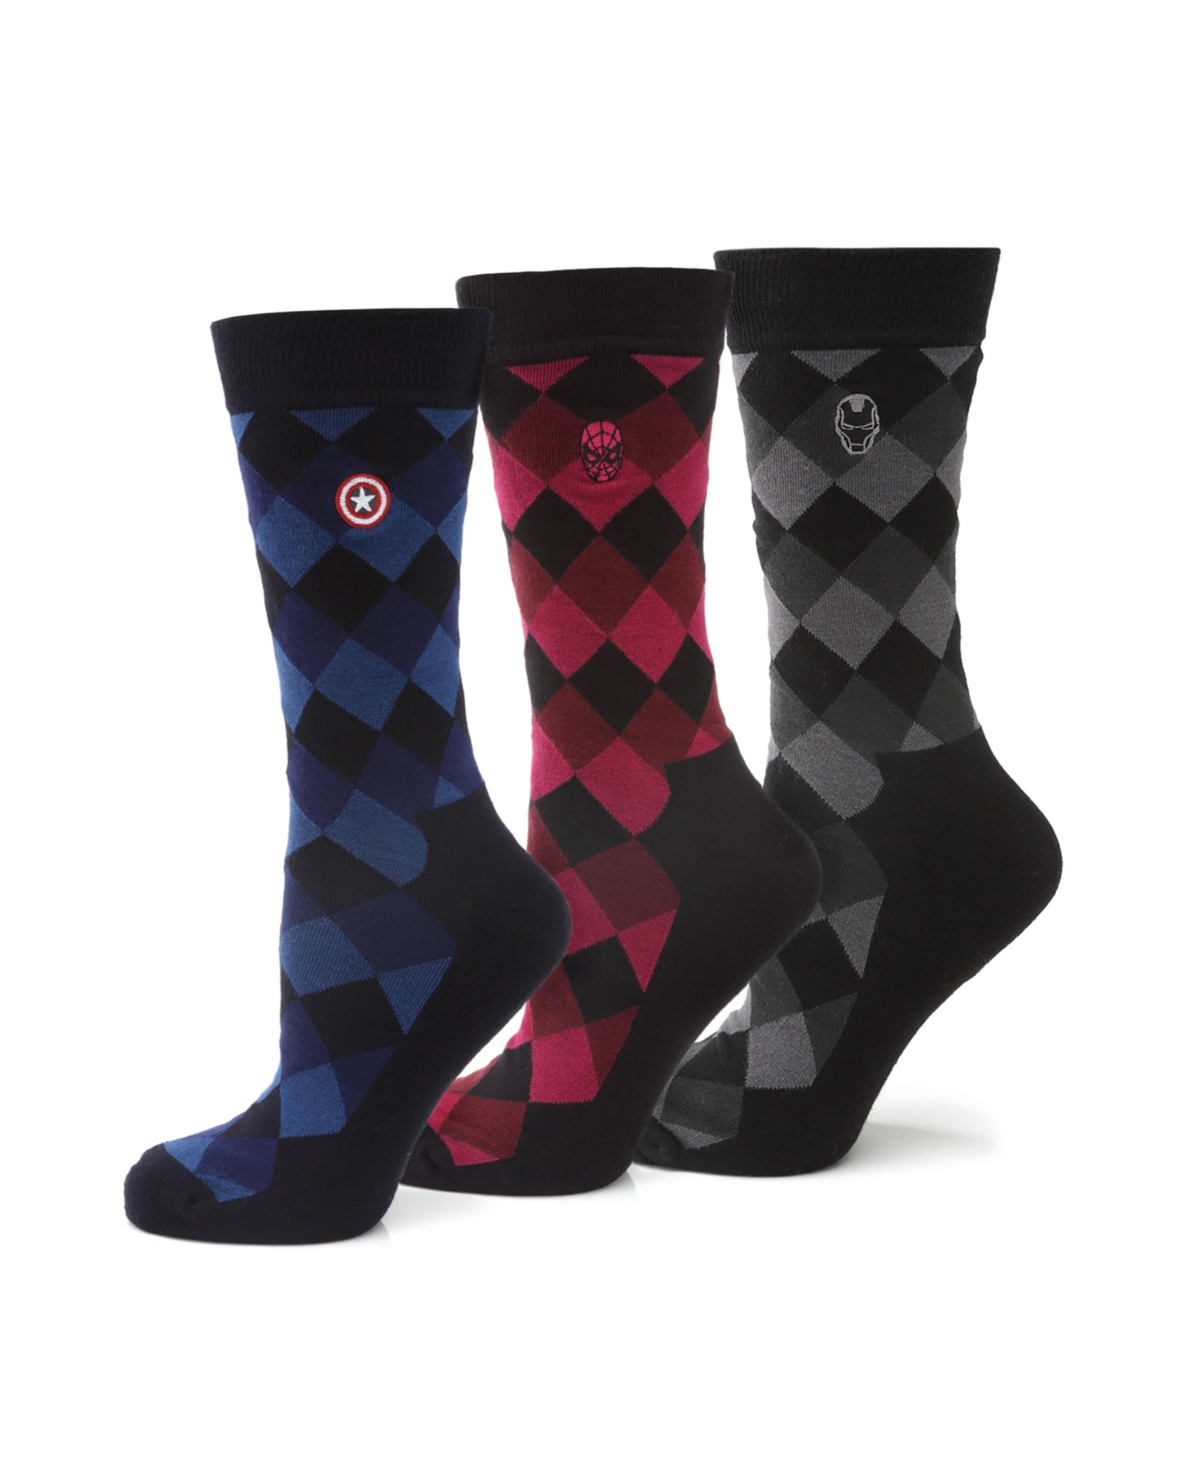 Men's Argyle Socks Gift Set, Pack of 3 - Multi